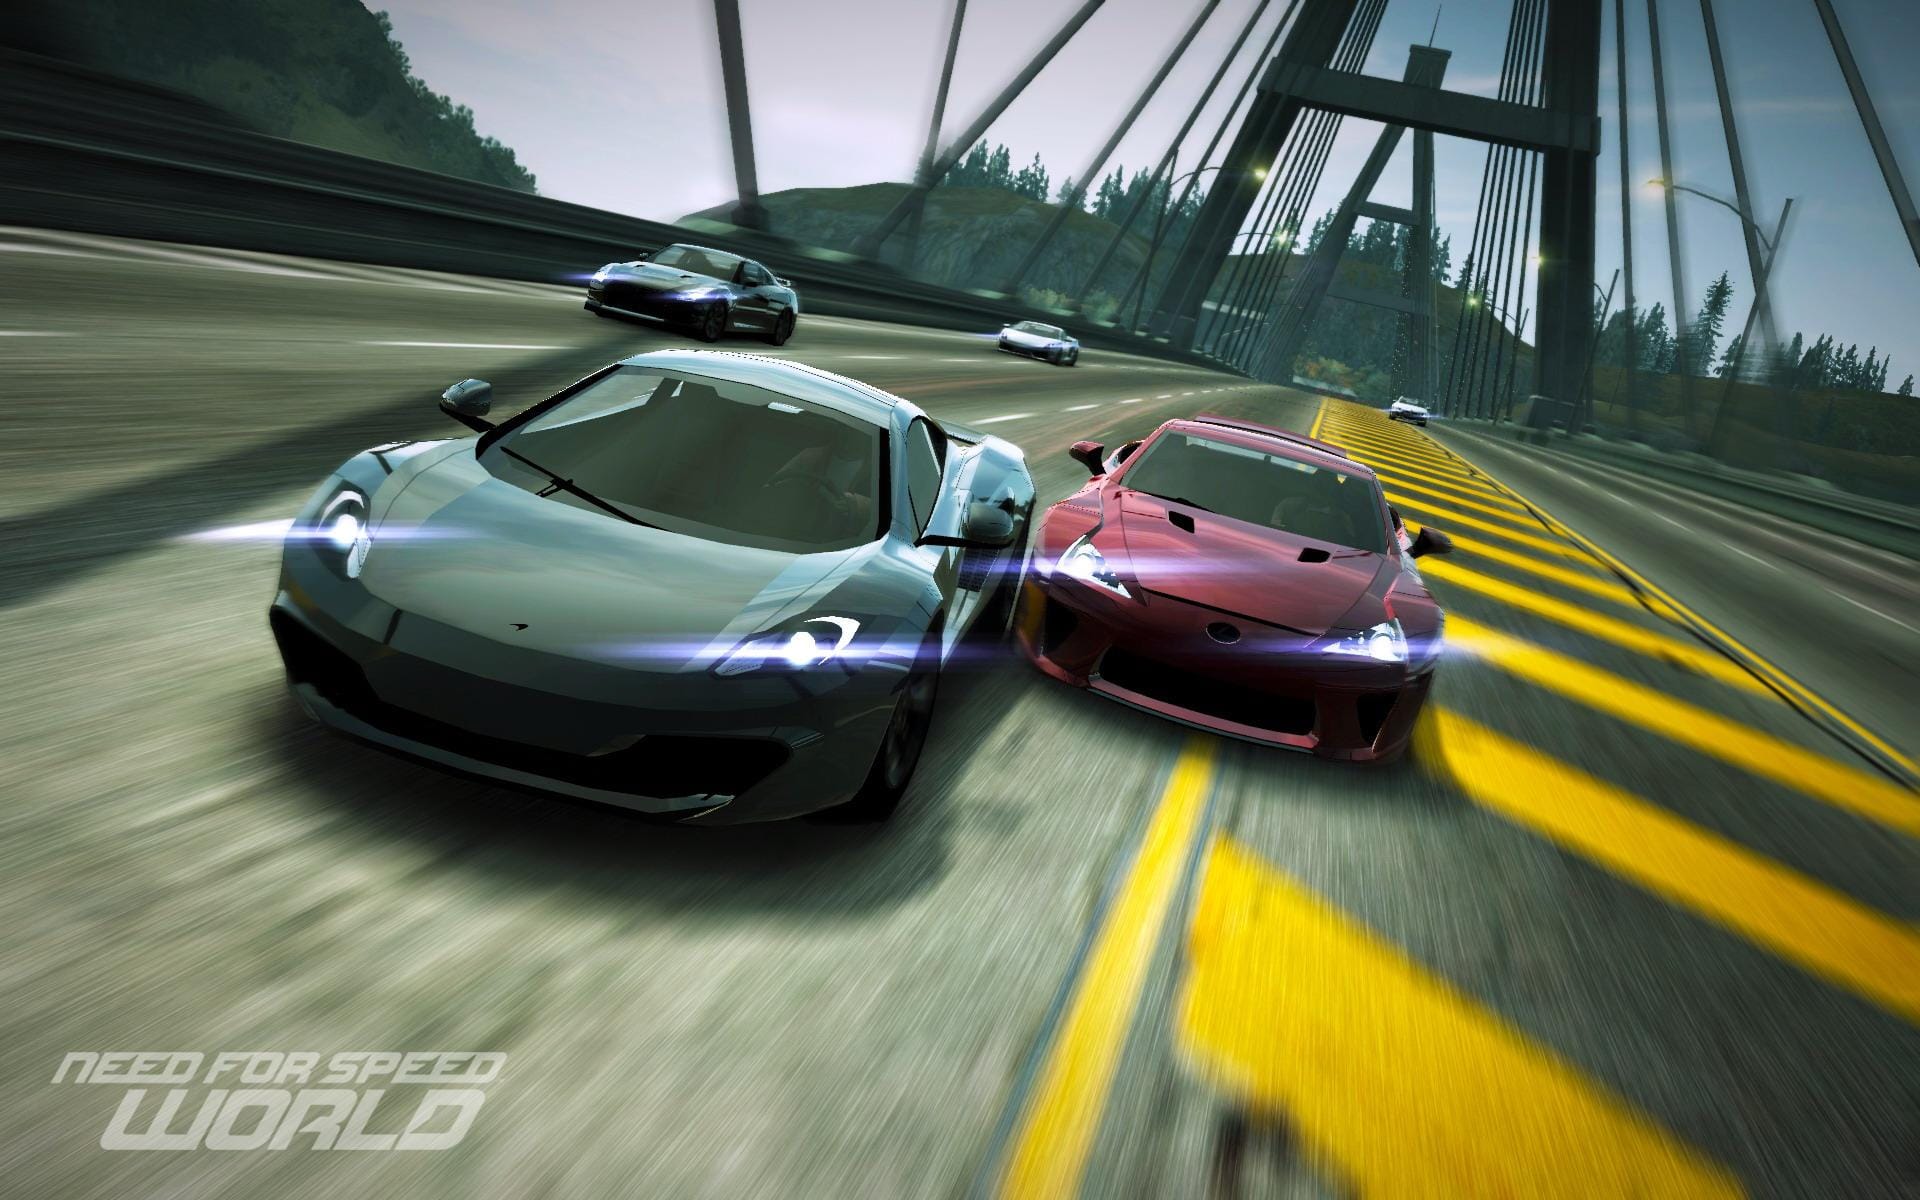 Need for Speed: World картинки и обои.